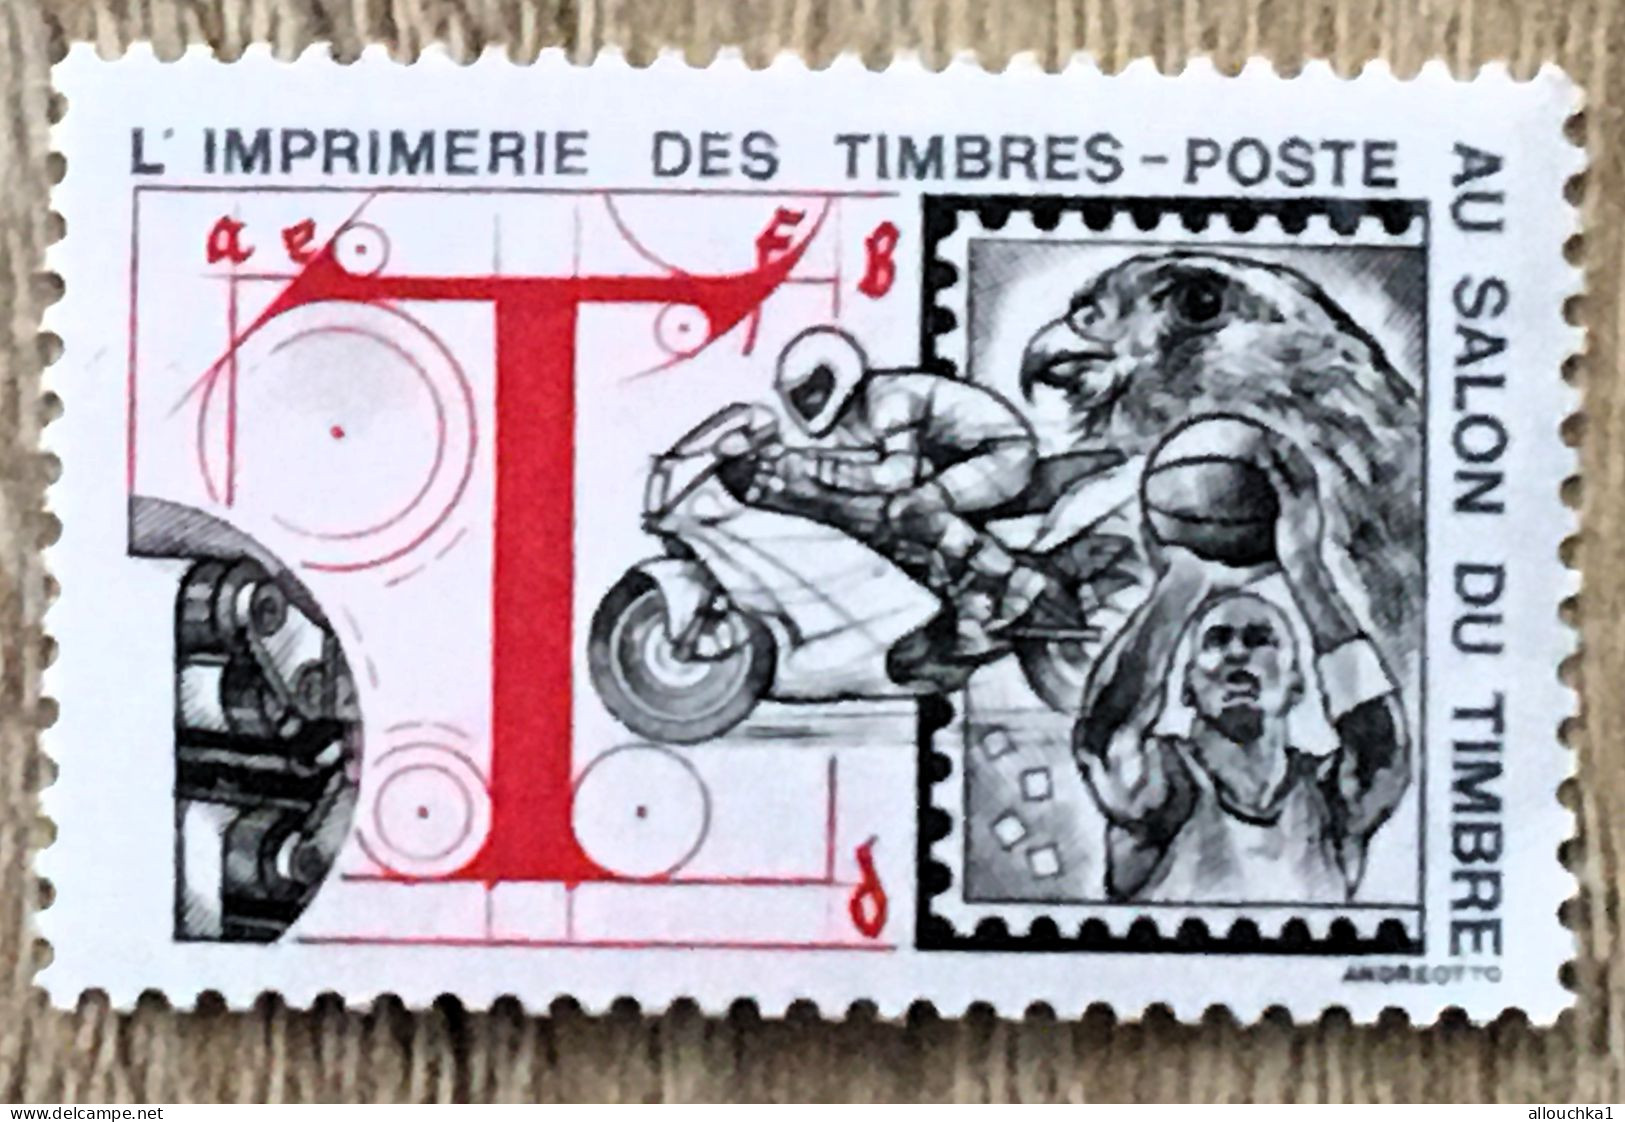 Imprimerie Timbres Poste Au Salon Du Timbre-2 Timbres Vignette**Expo-Philatélique-Erinnophilie-[E]Stamp-Sticker-Viñeta - Filatelistische Tentoonstellingen